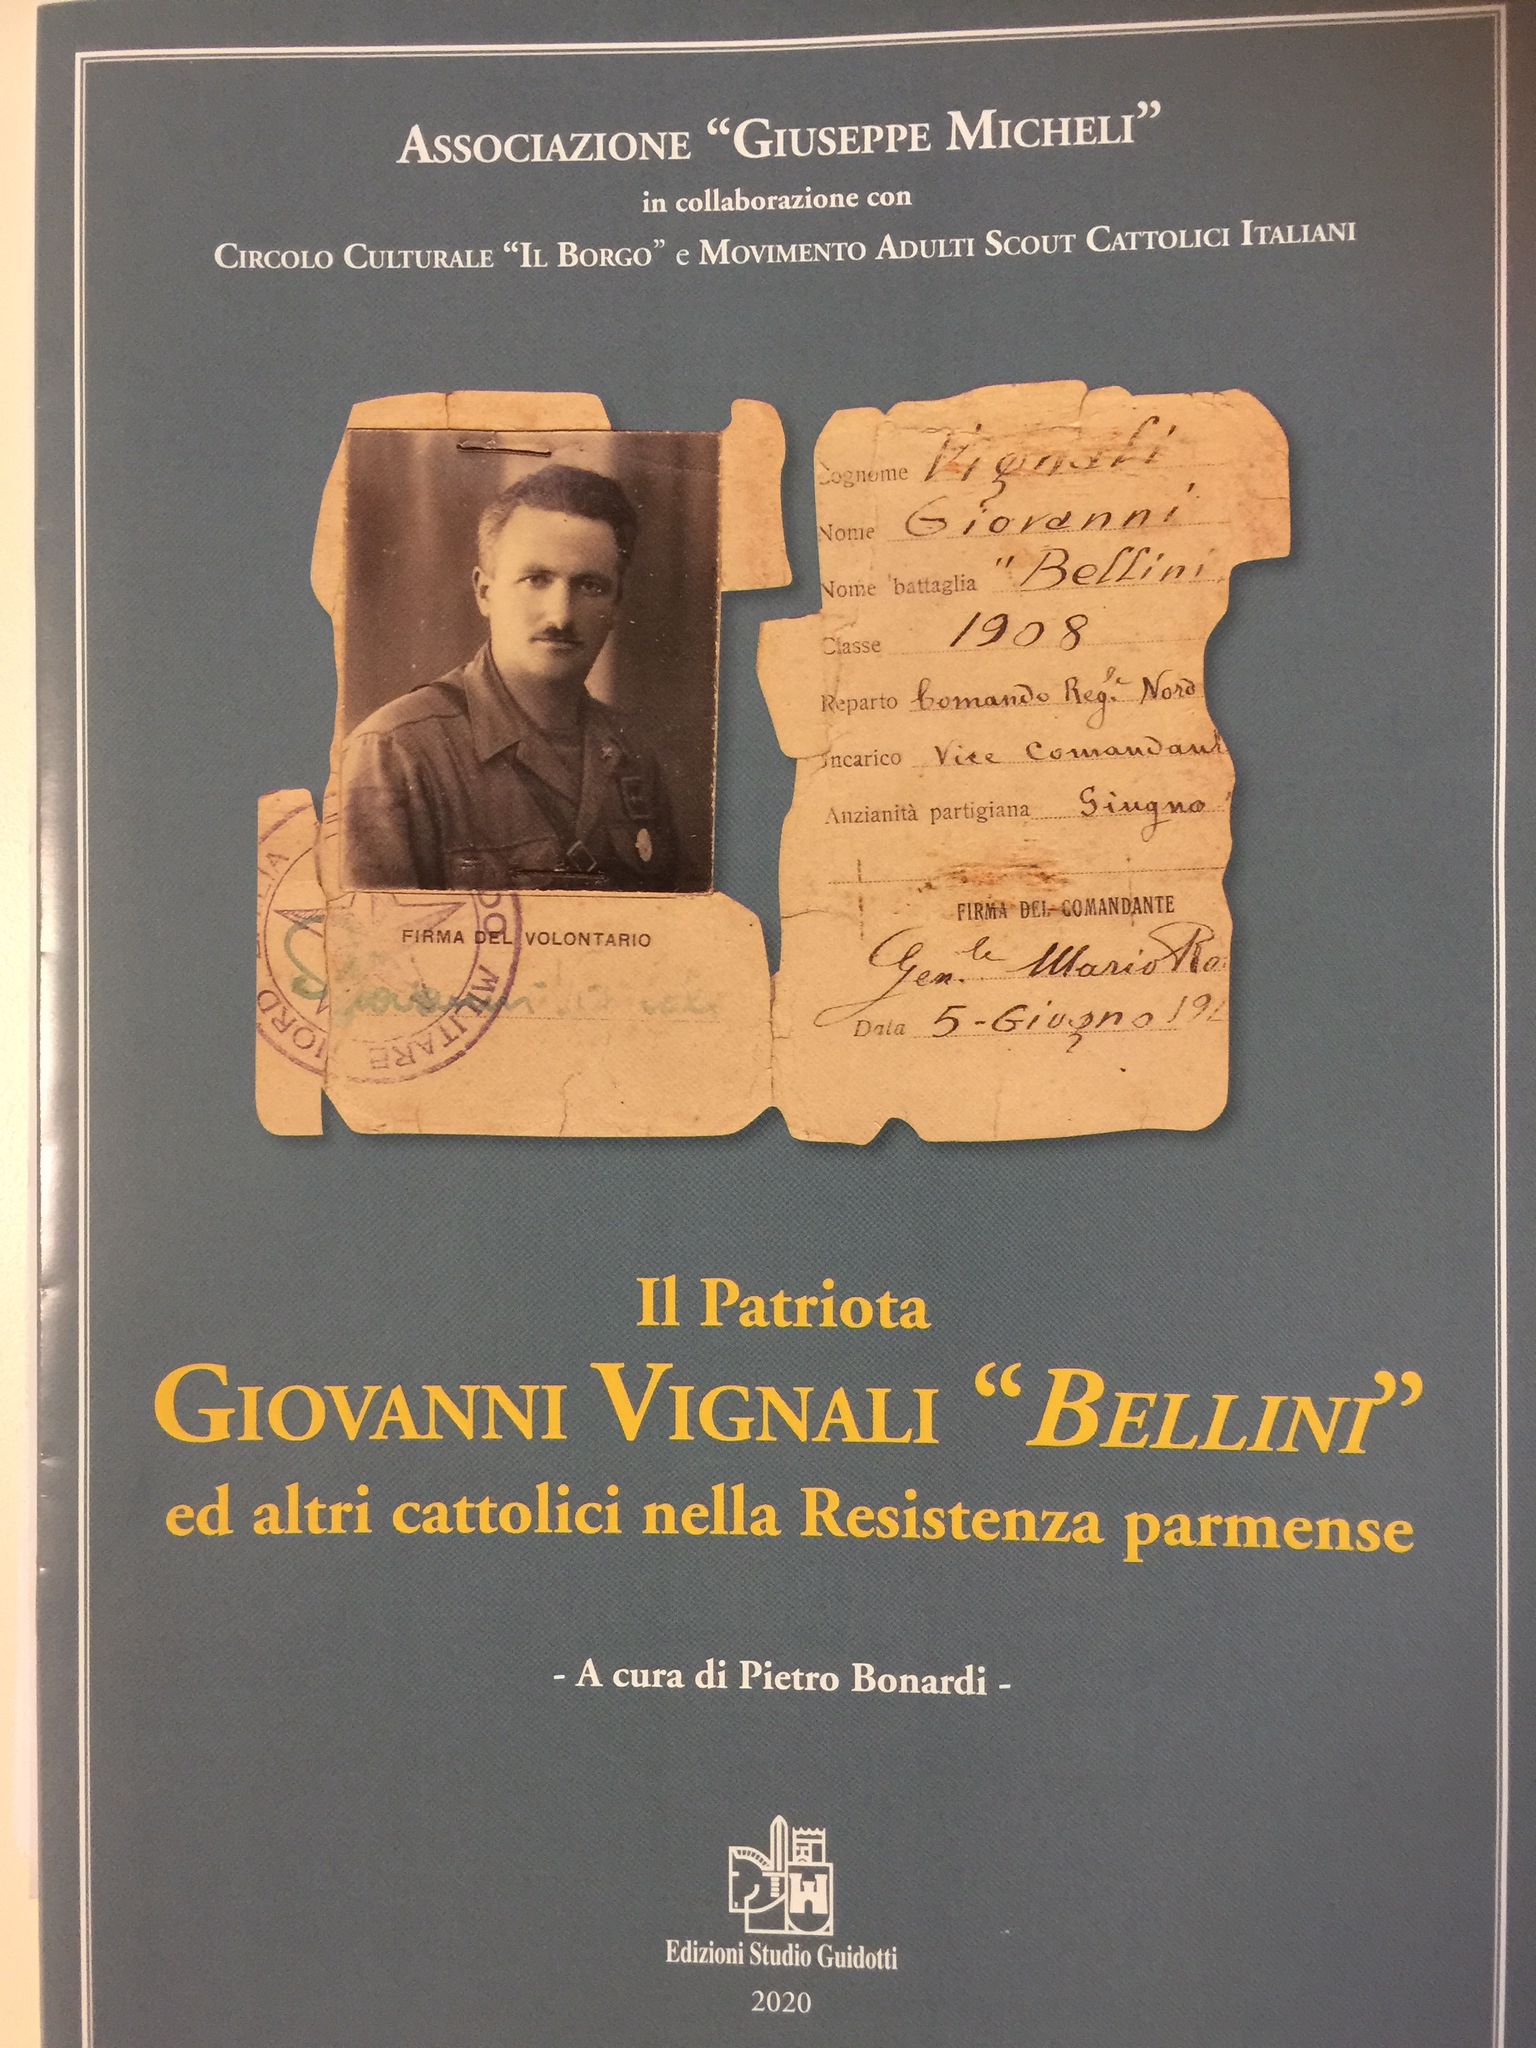 Libro_vignali_bellini_copertina.jpg